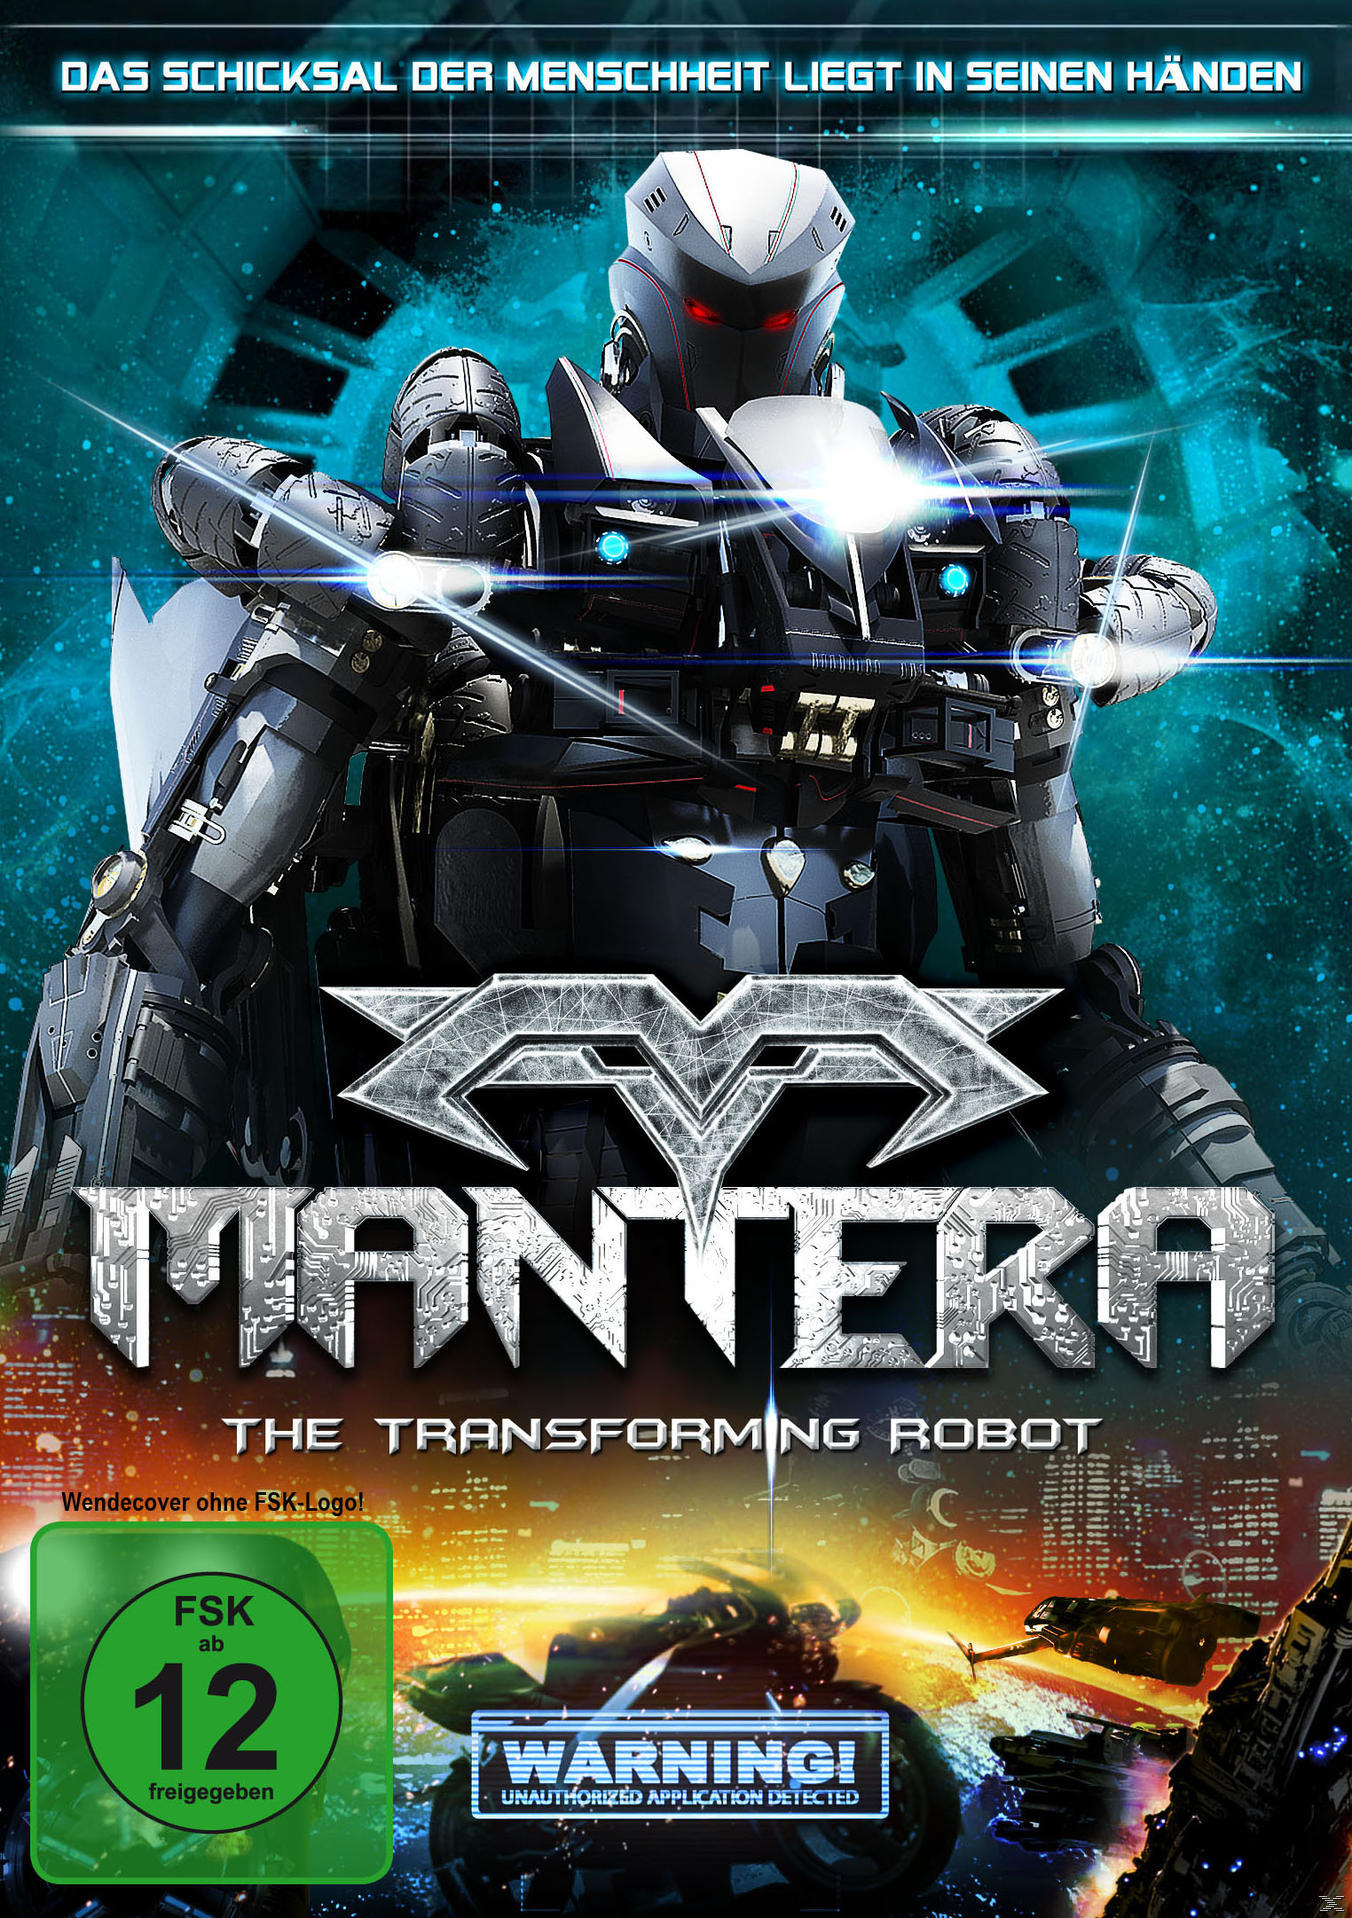 Mantera Robot DVD The – Transforming